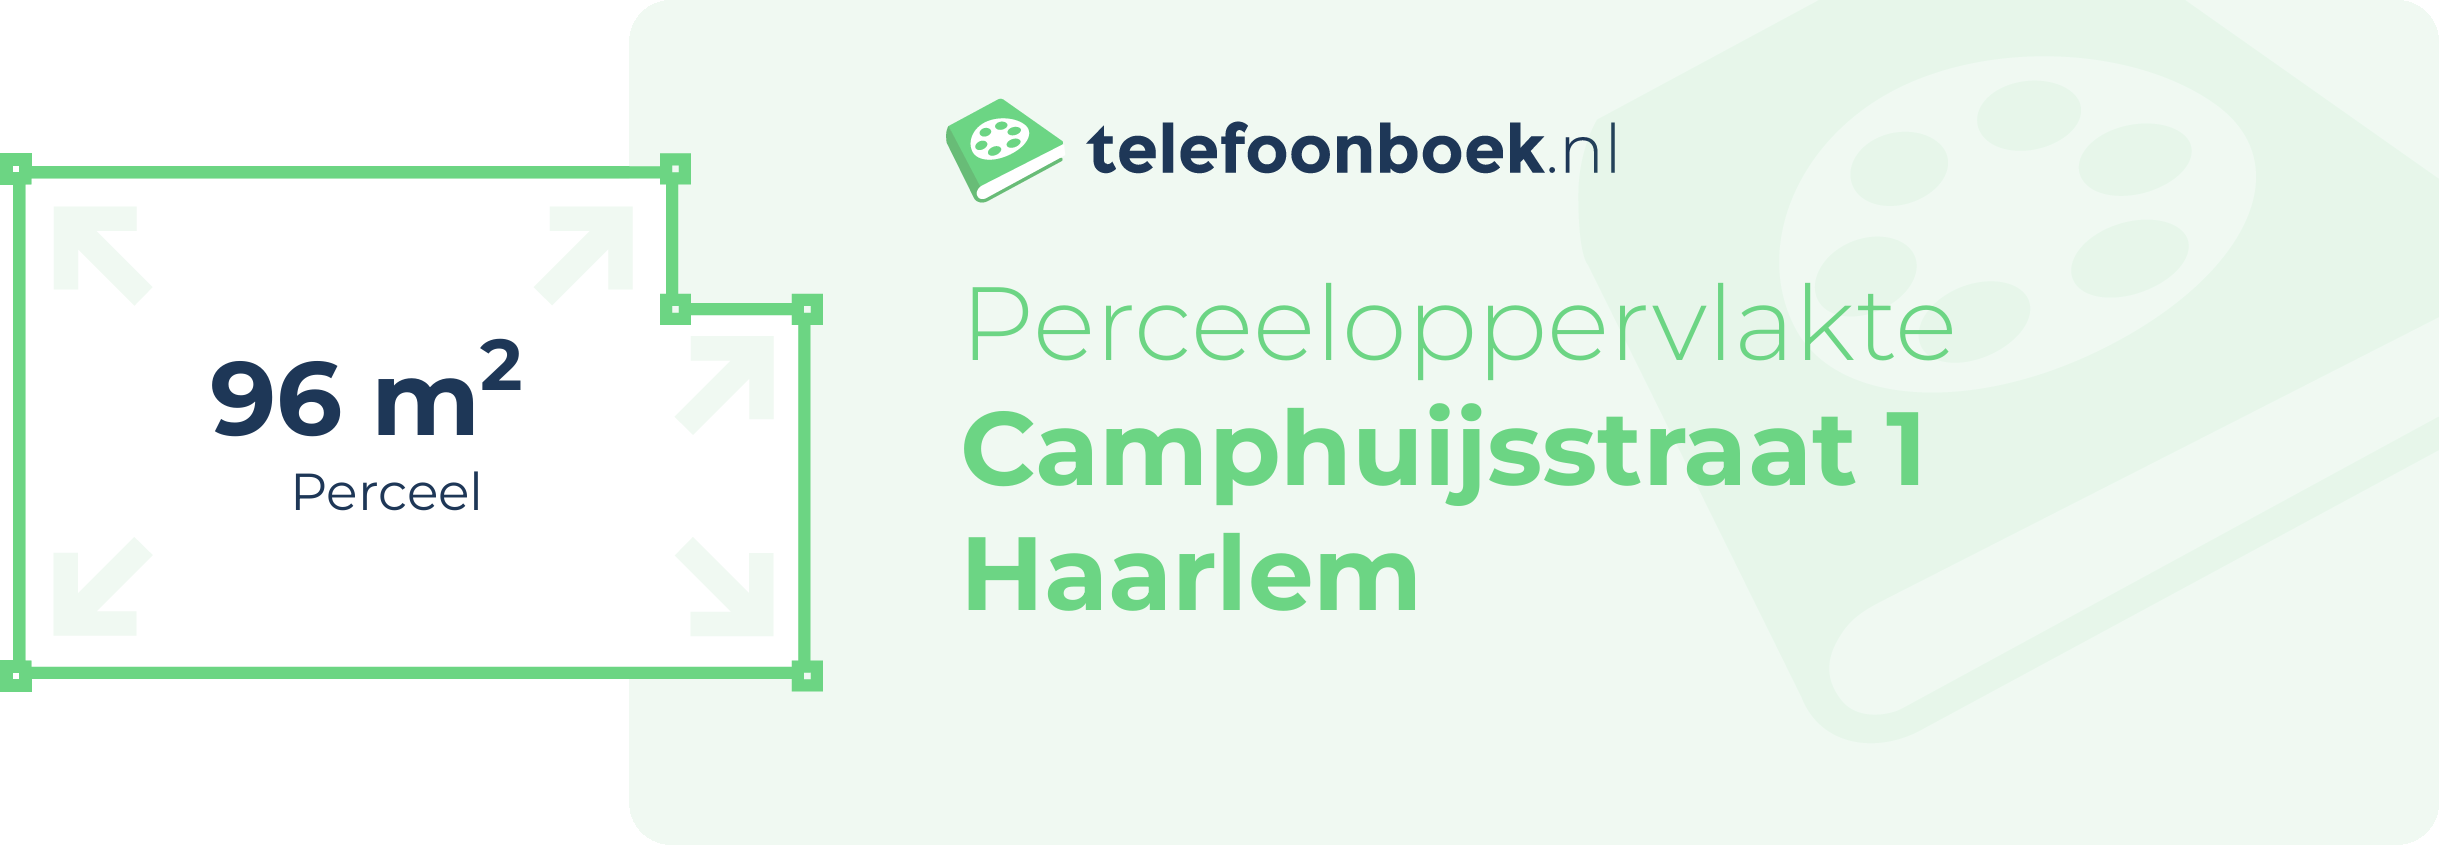 Perceeloppervlakte Camphuijsstraat 1 Haarlem